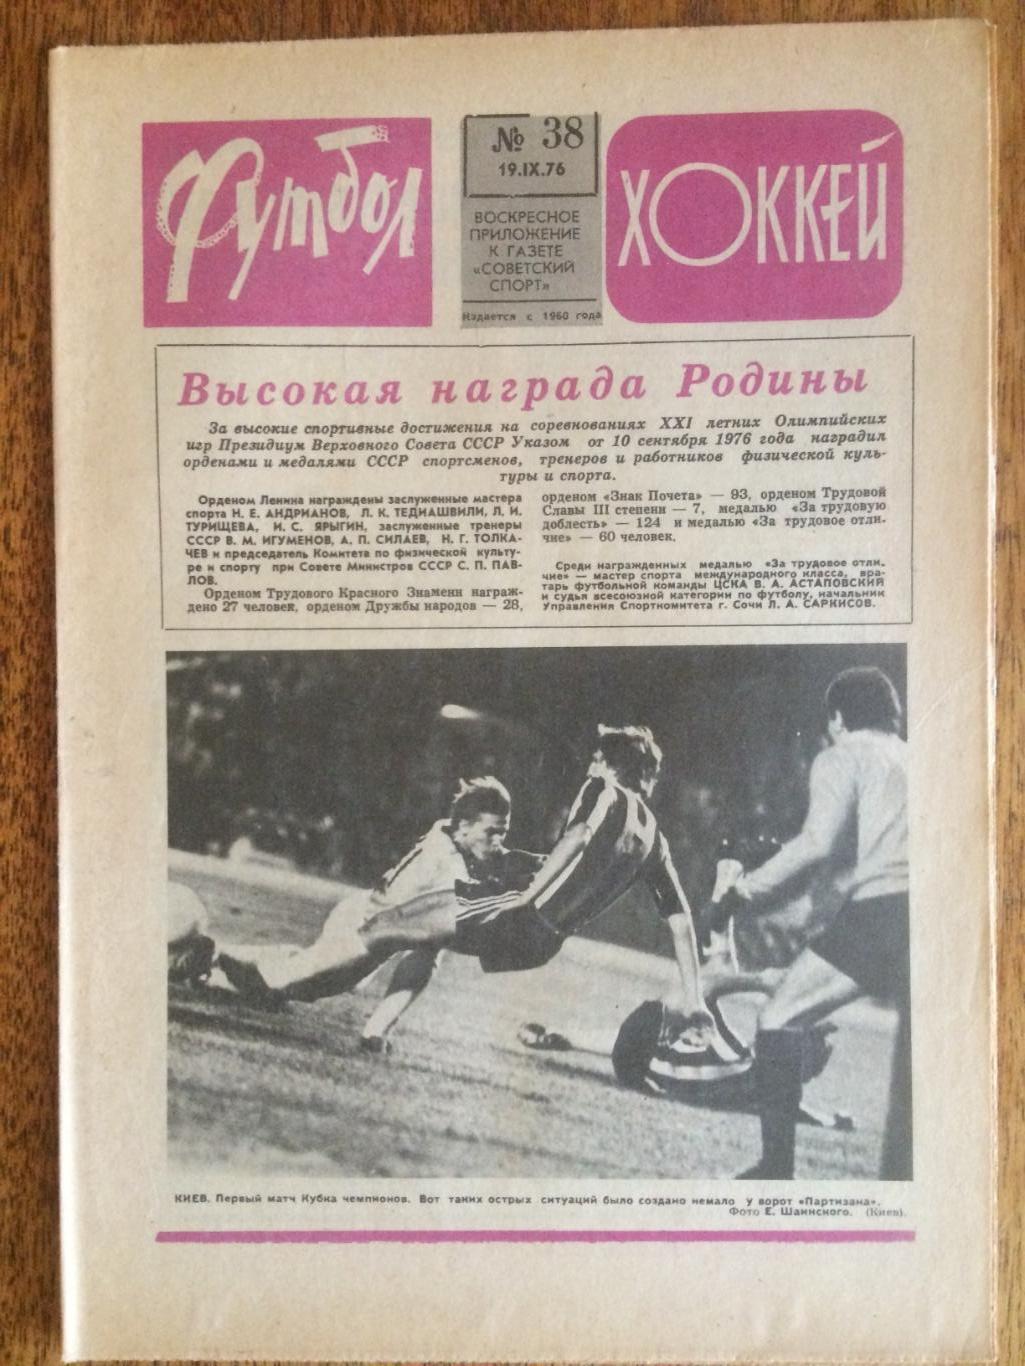 Футбол-Хоккей №38 1976